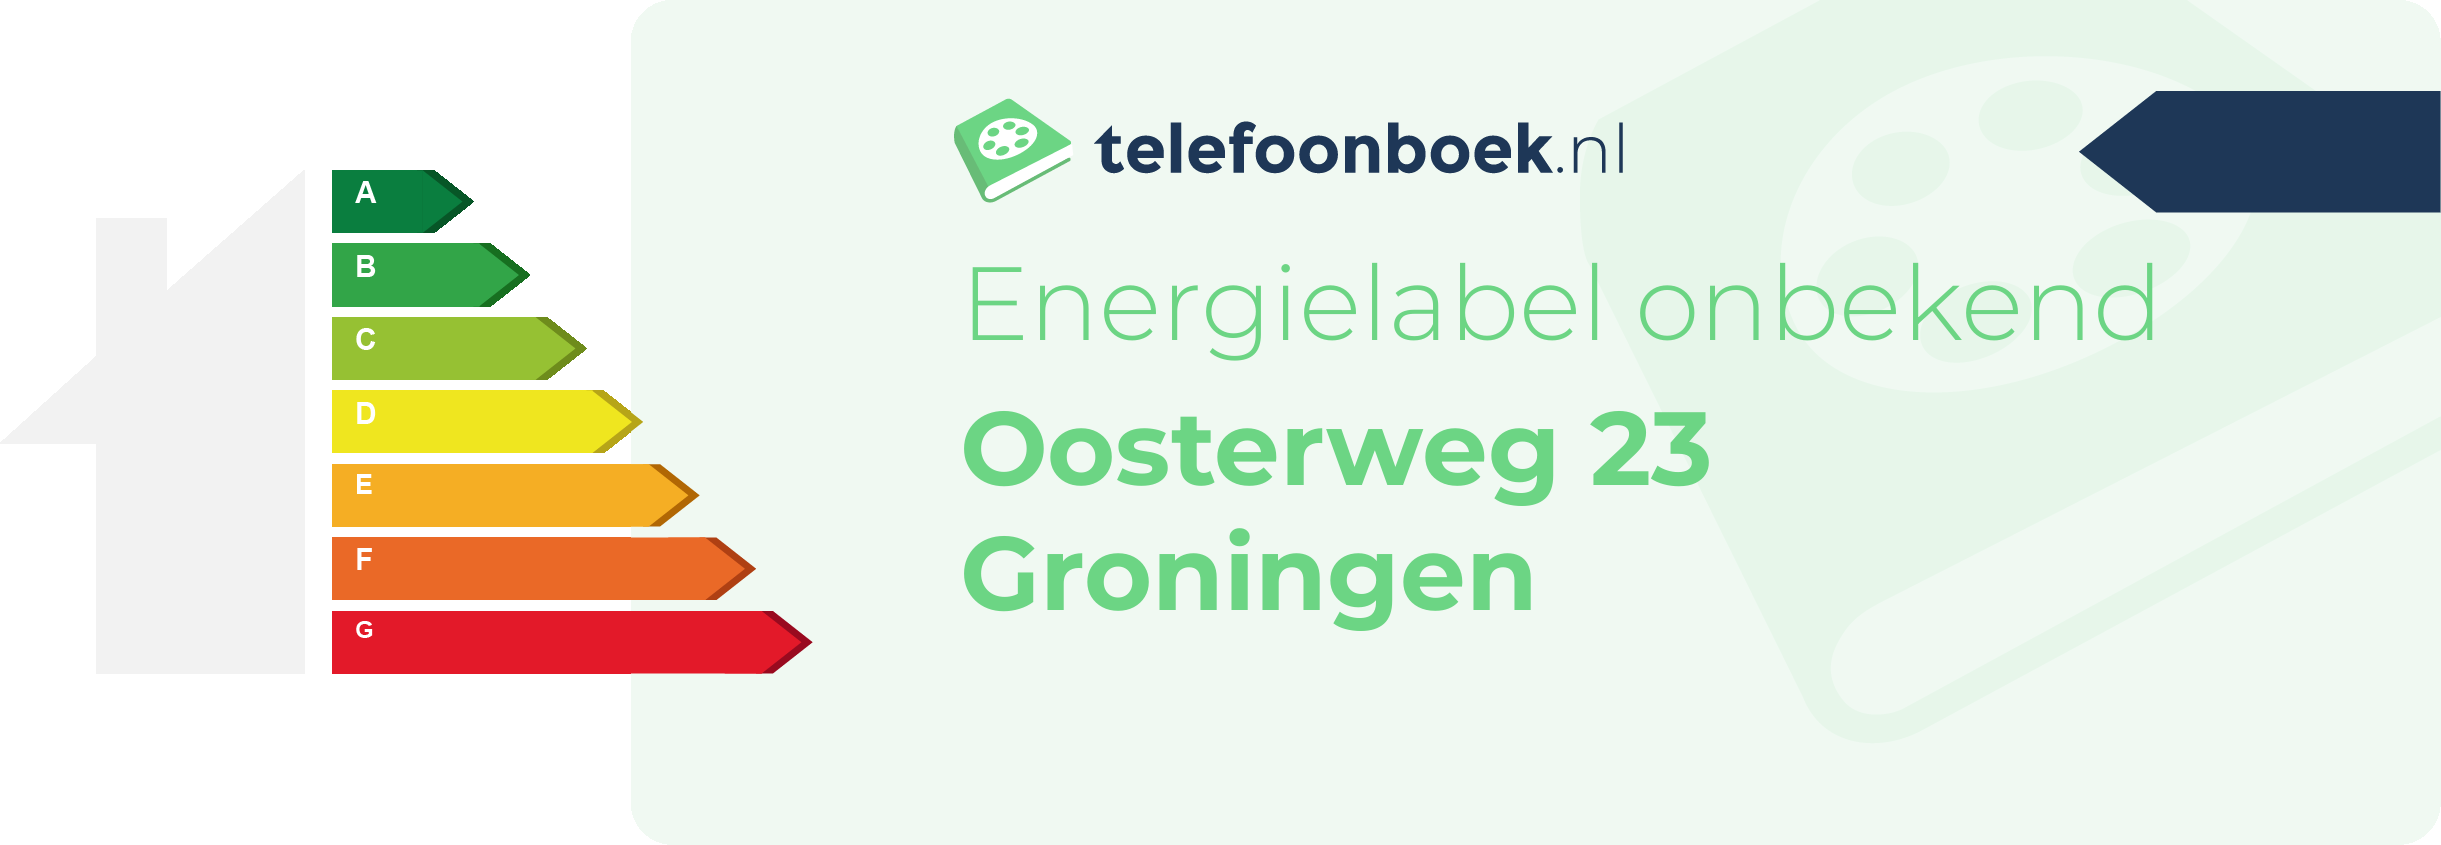 Energielabel Oosterweg 23 Groningen